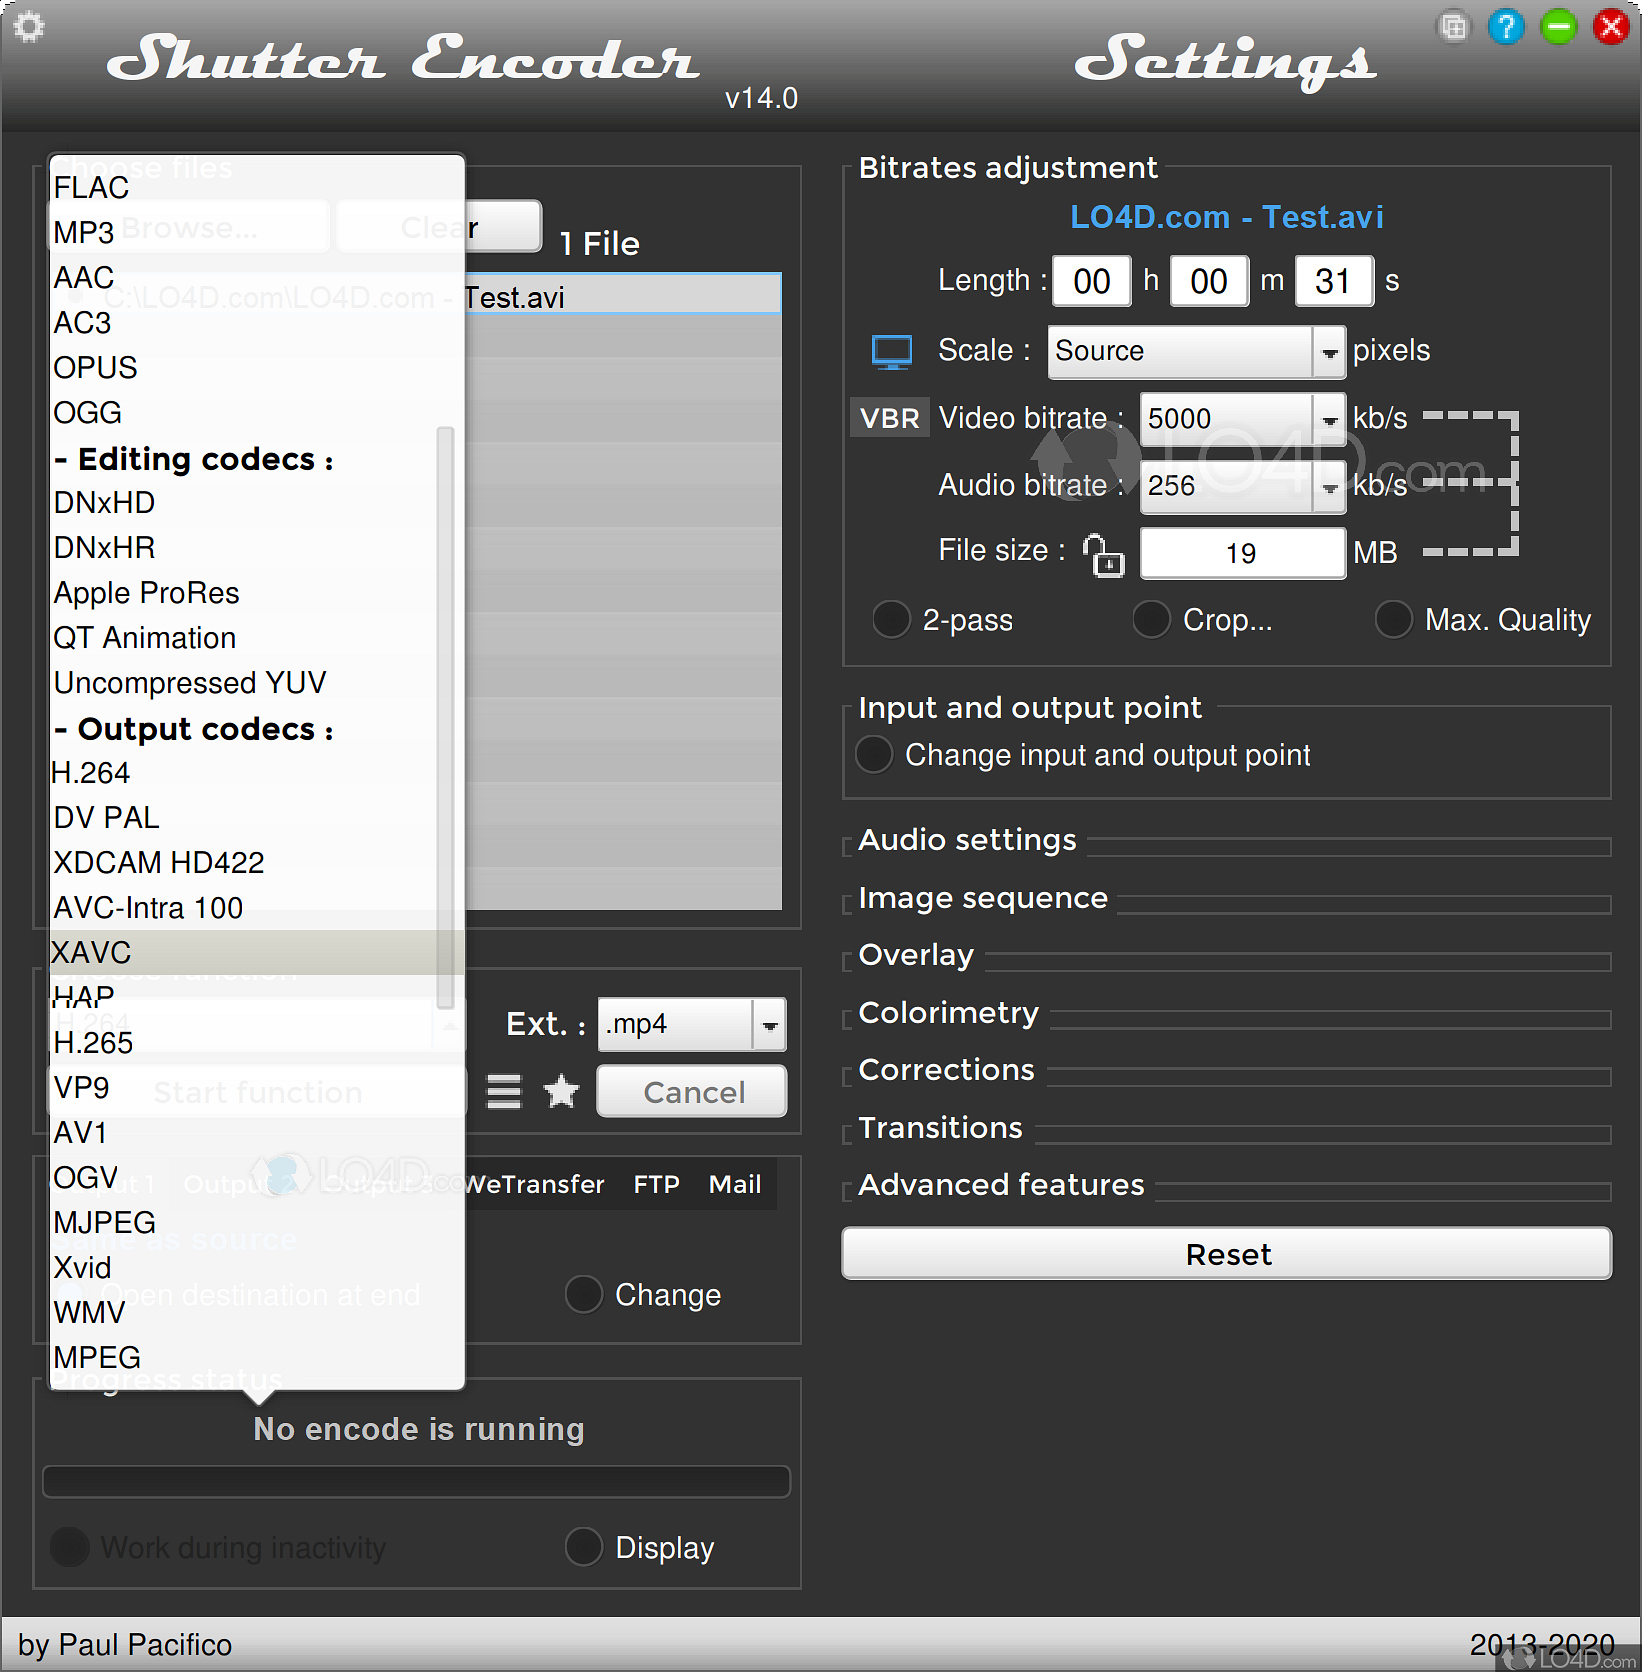 Shutter Encoder 17.3 instal the new for apple